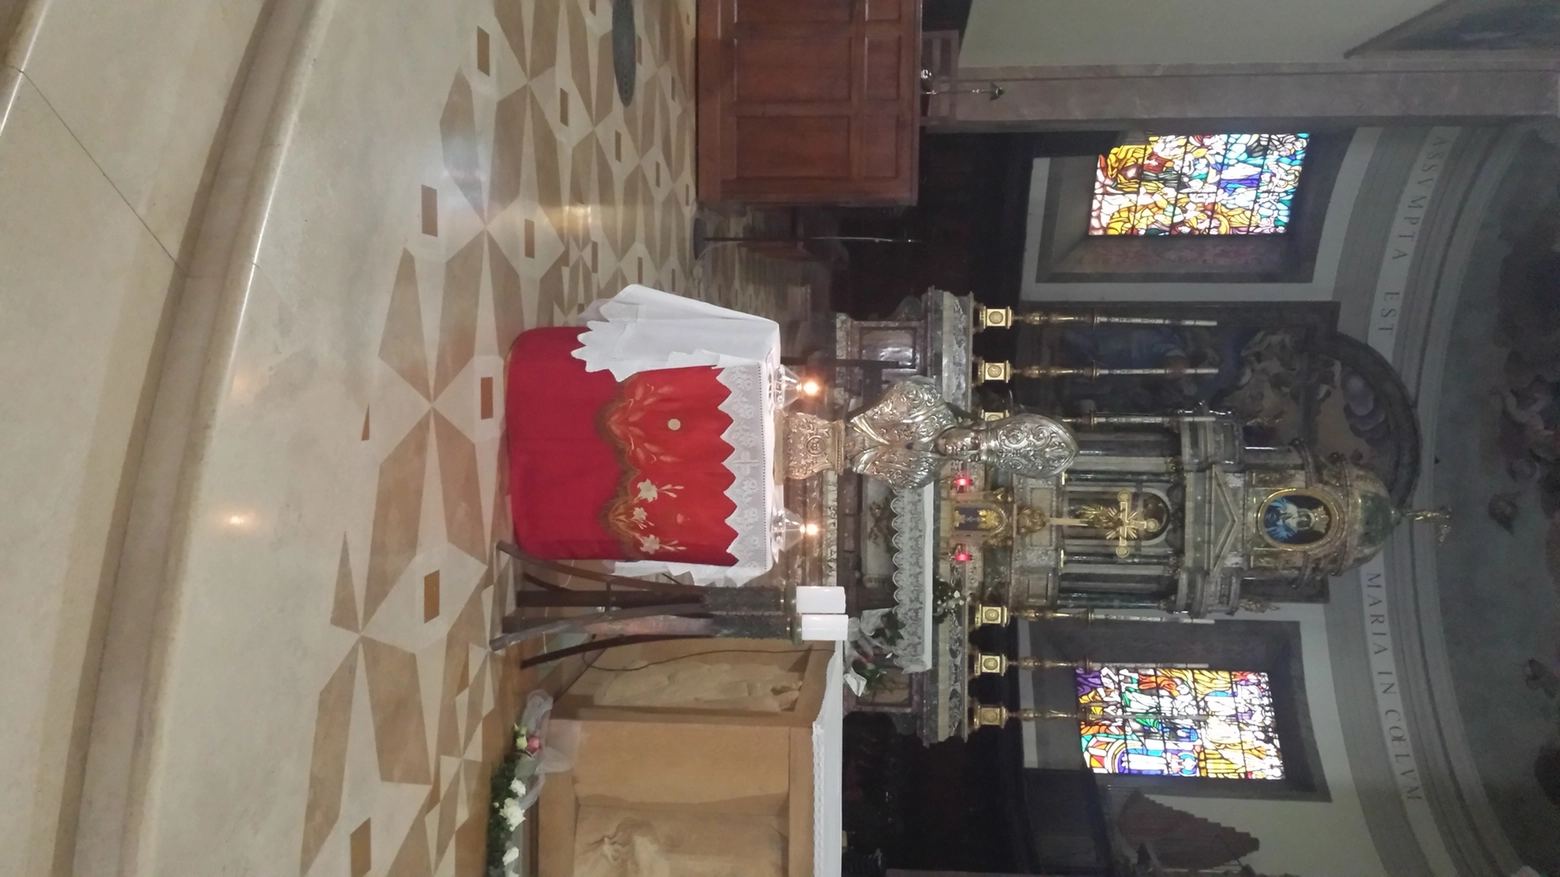 Il busto di San Valentino che farà da 'controfigura' all'urna del santo